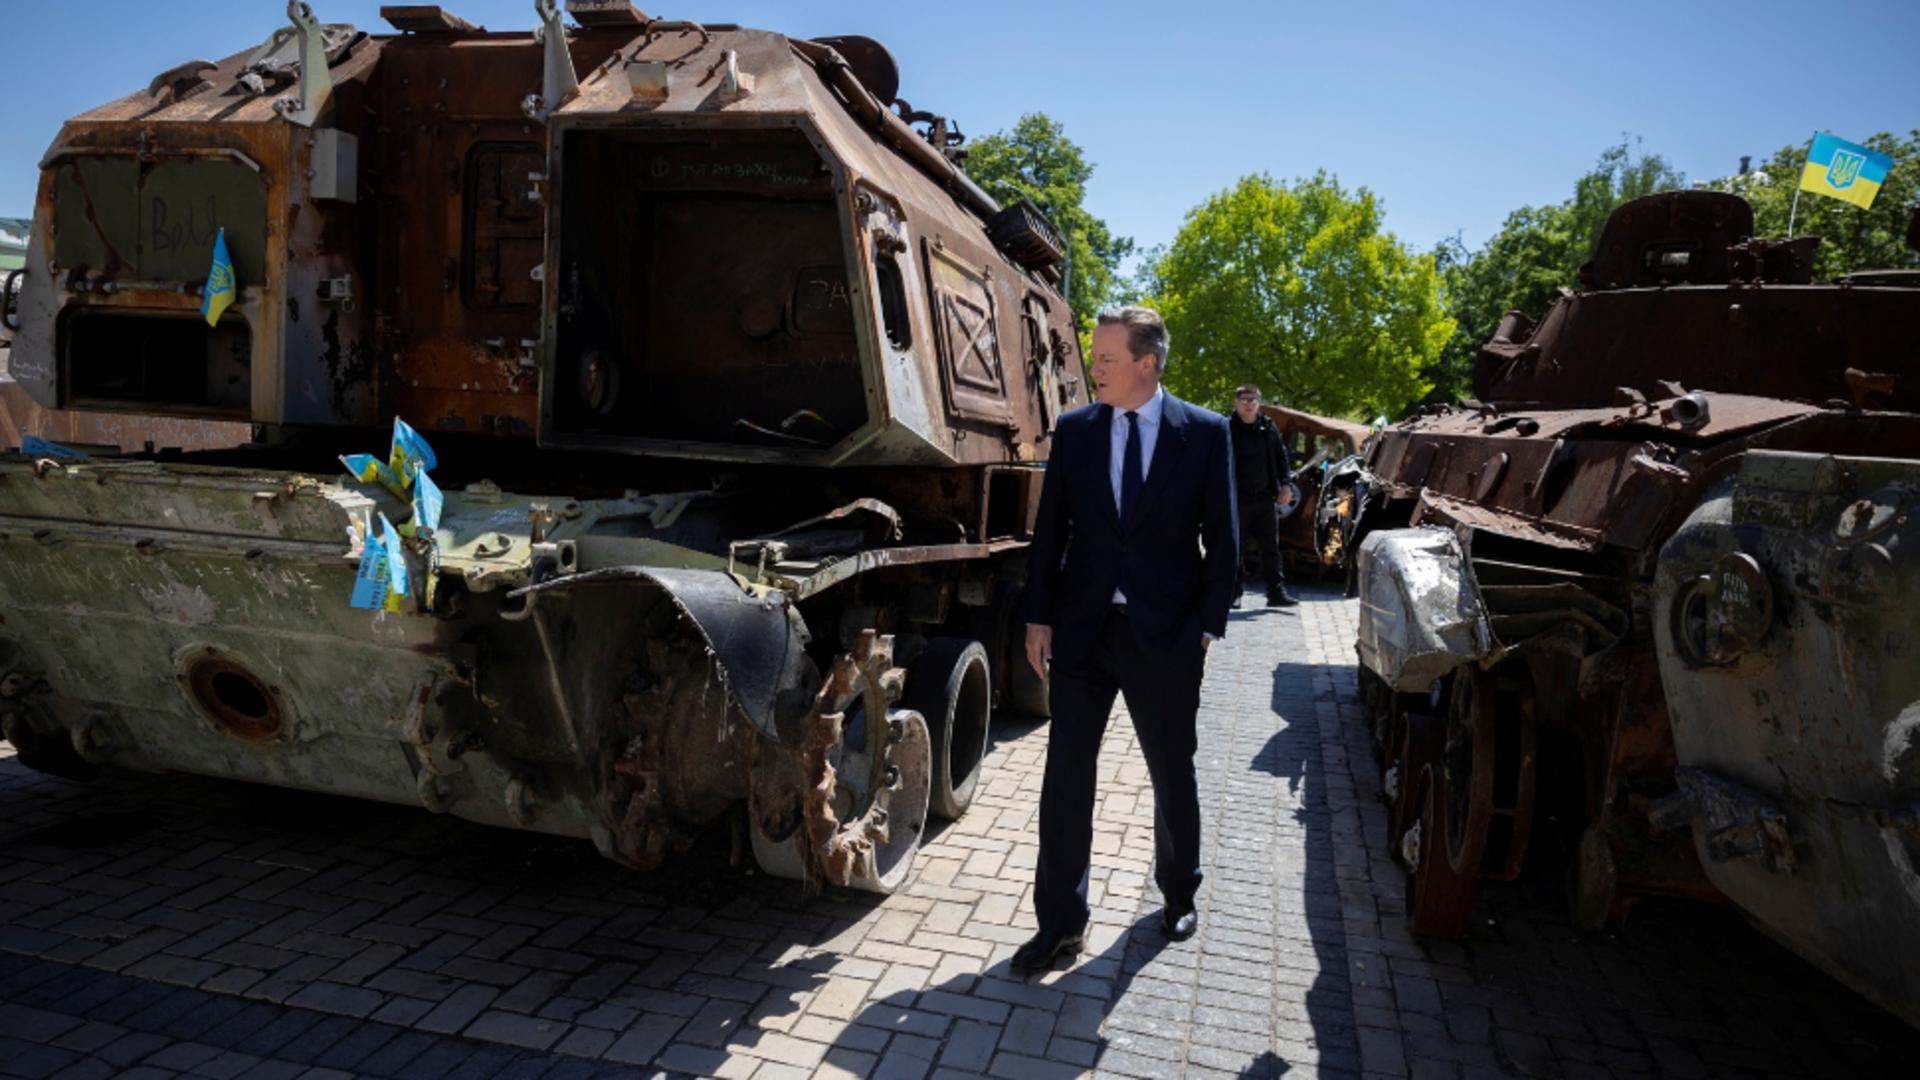 Război în Ucraina, ziua 780: Şeful diplomaţiei britanice David Cameron a vizitat joi Kievul. Promisiunile făcute armatei ucrainene - LIVE TEXT